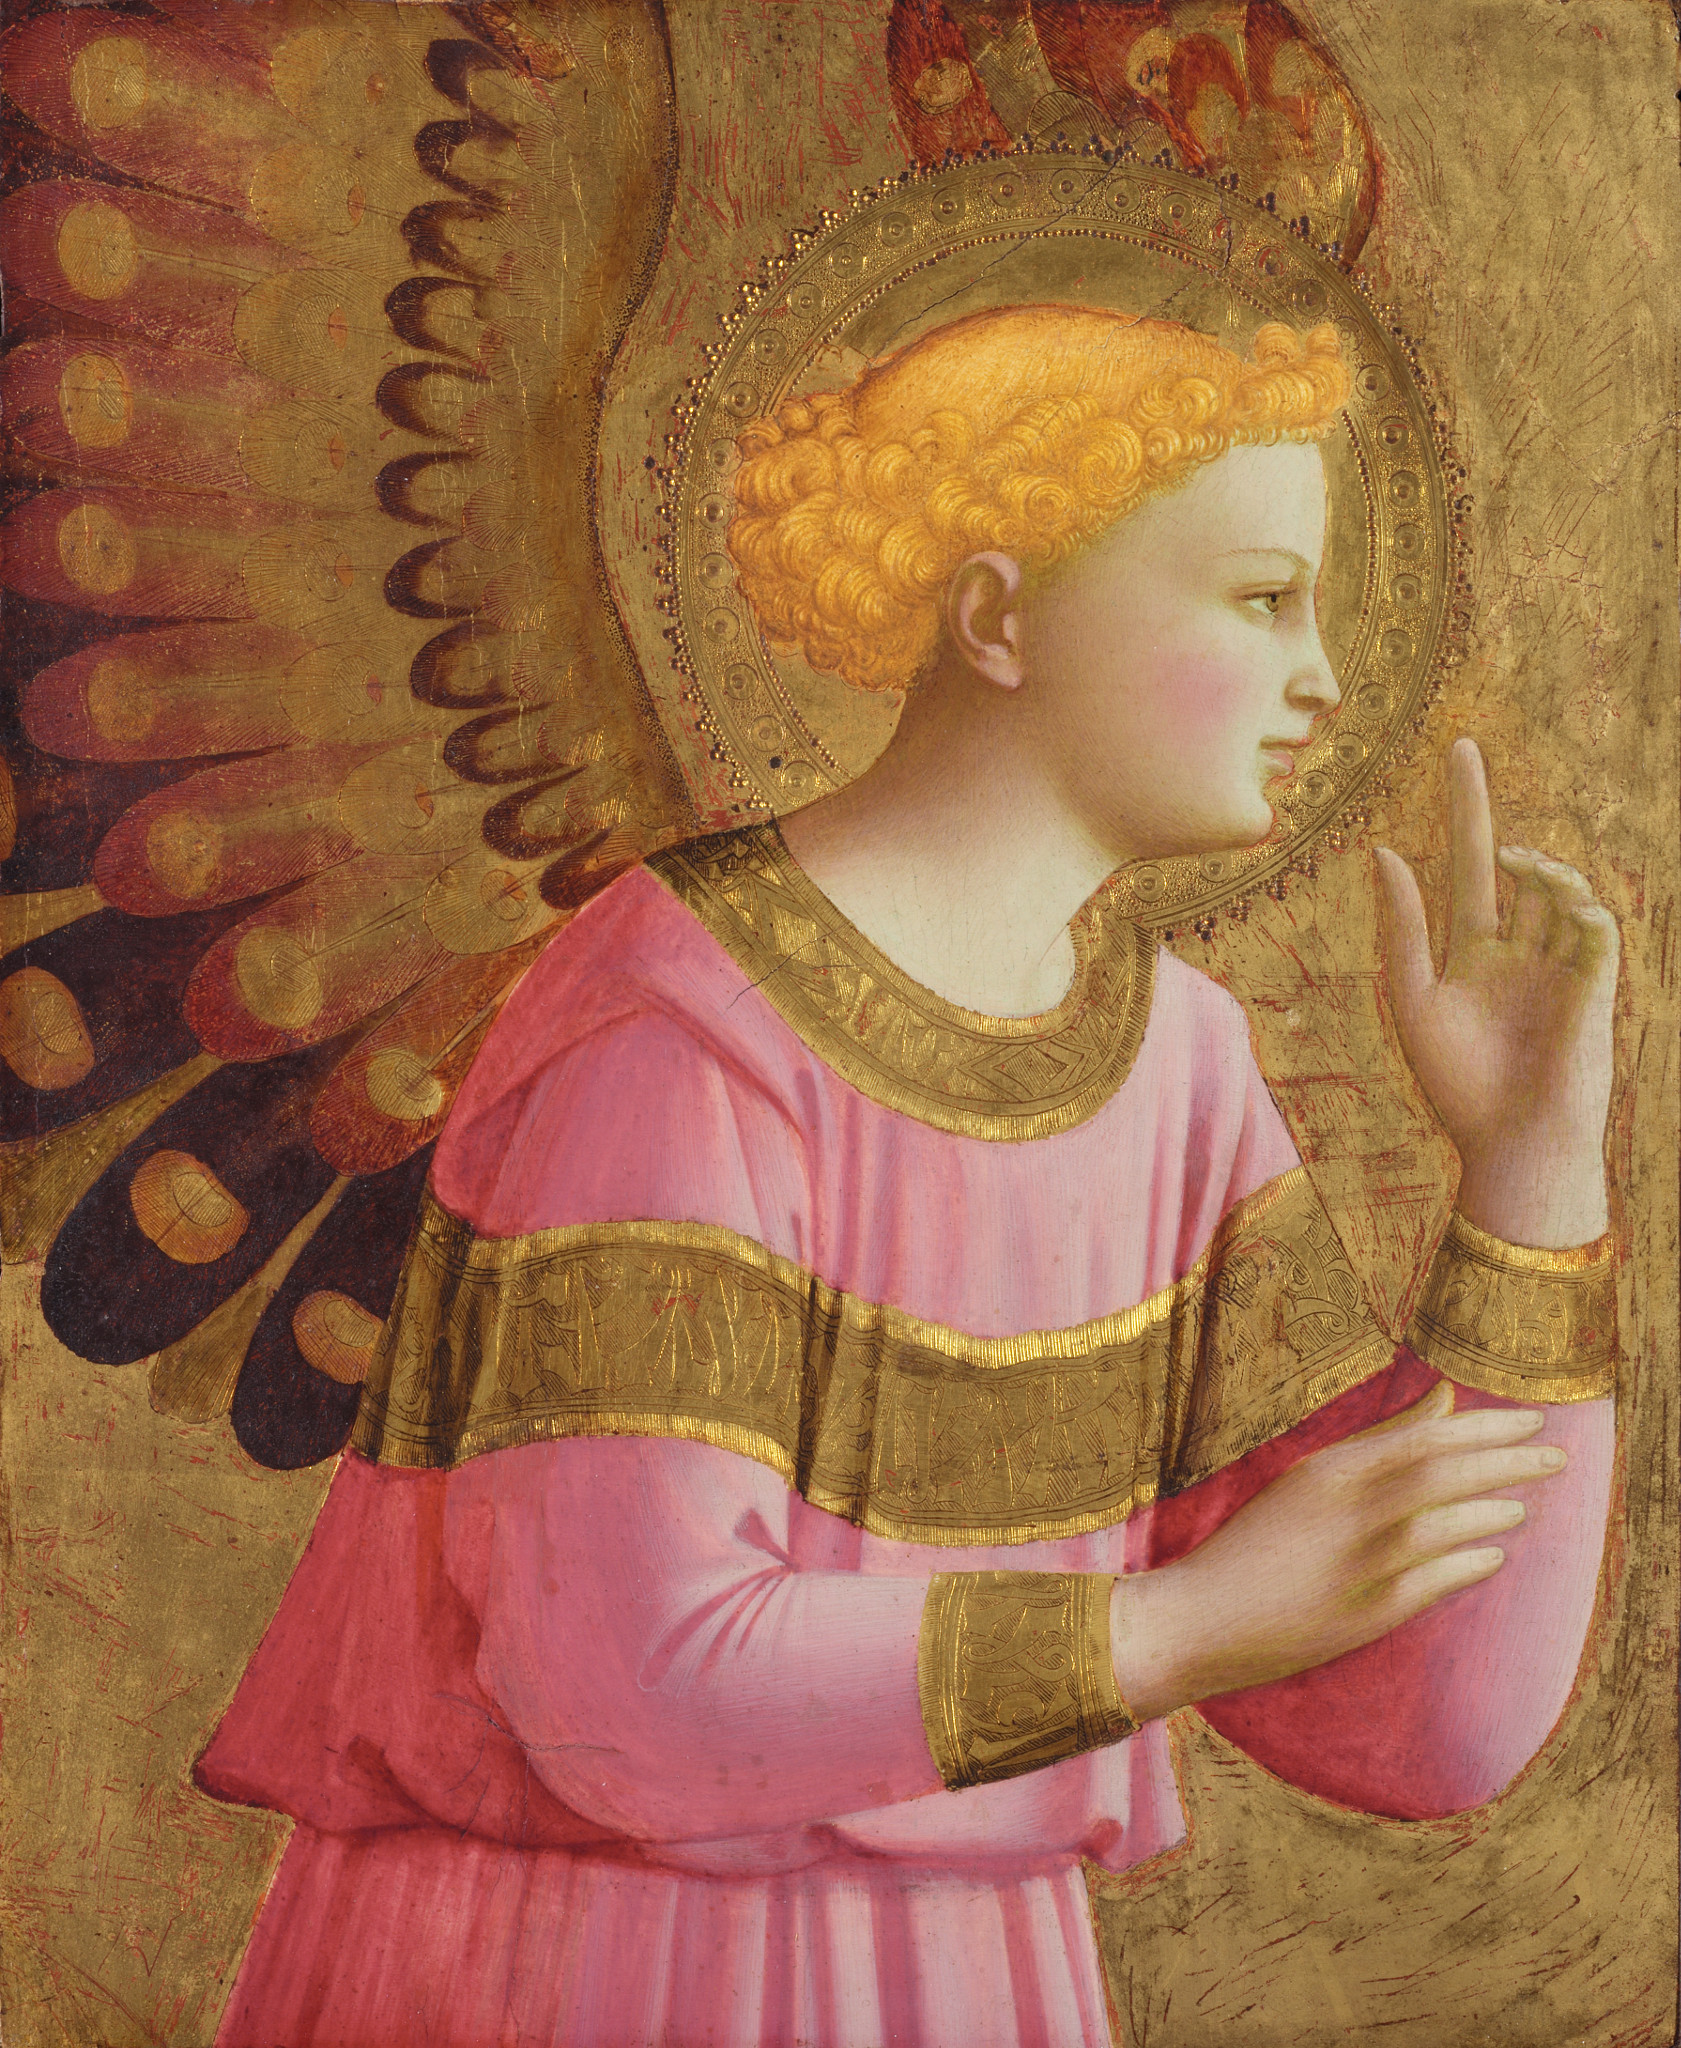 उद्घोषक देवदूत by Fra Angelico - १४५०-१४५५ - ३३ x २७ सेमी 